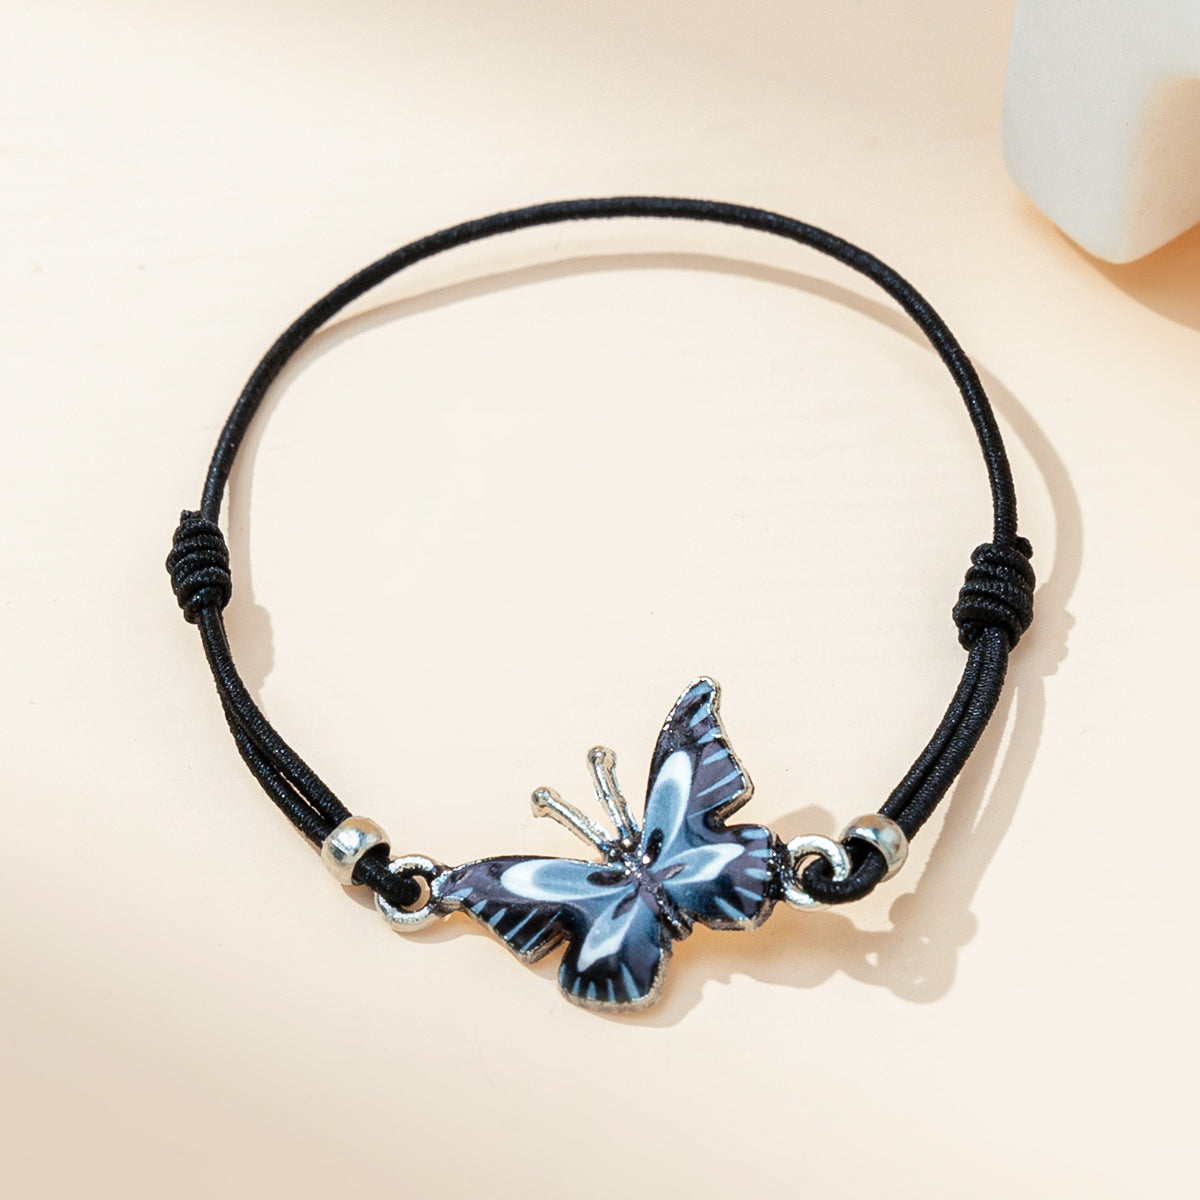 Sweet Simple Style Butterfly Alloy Women's Bracelets